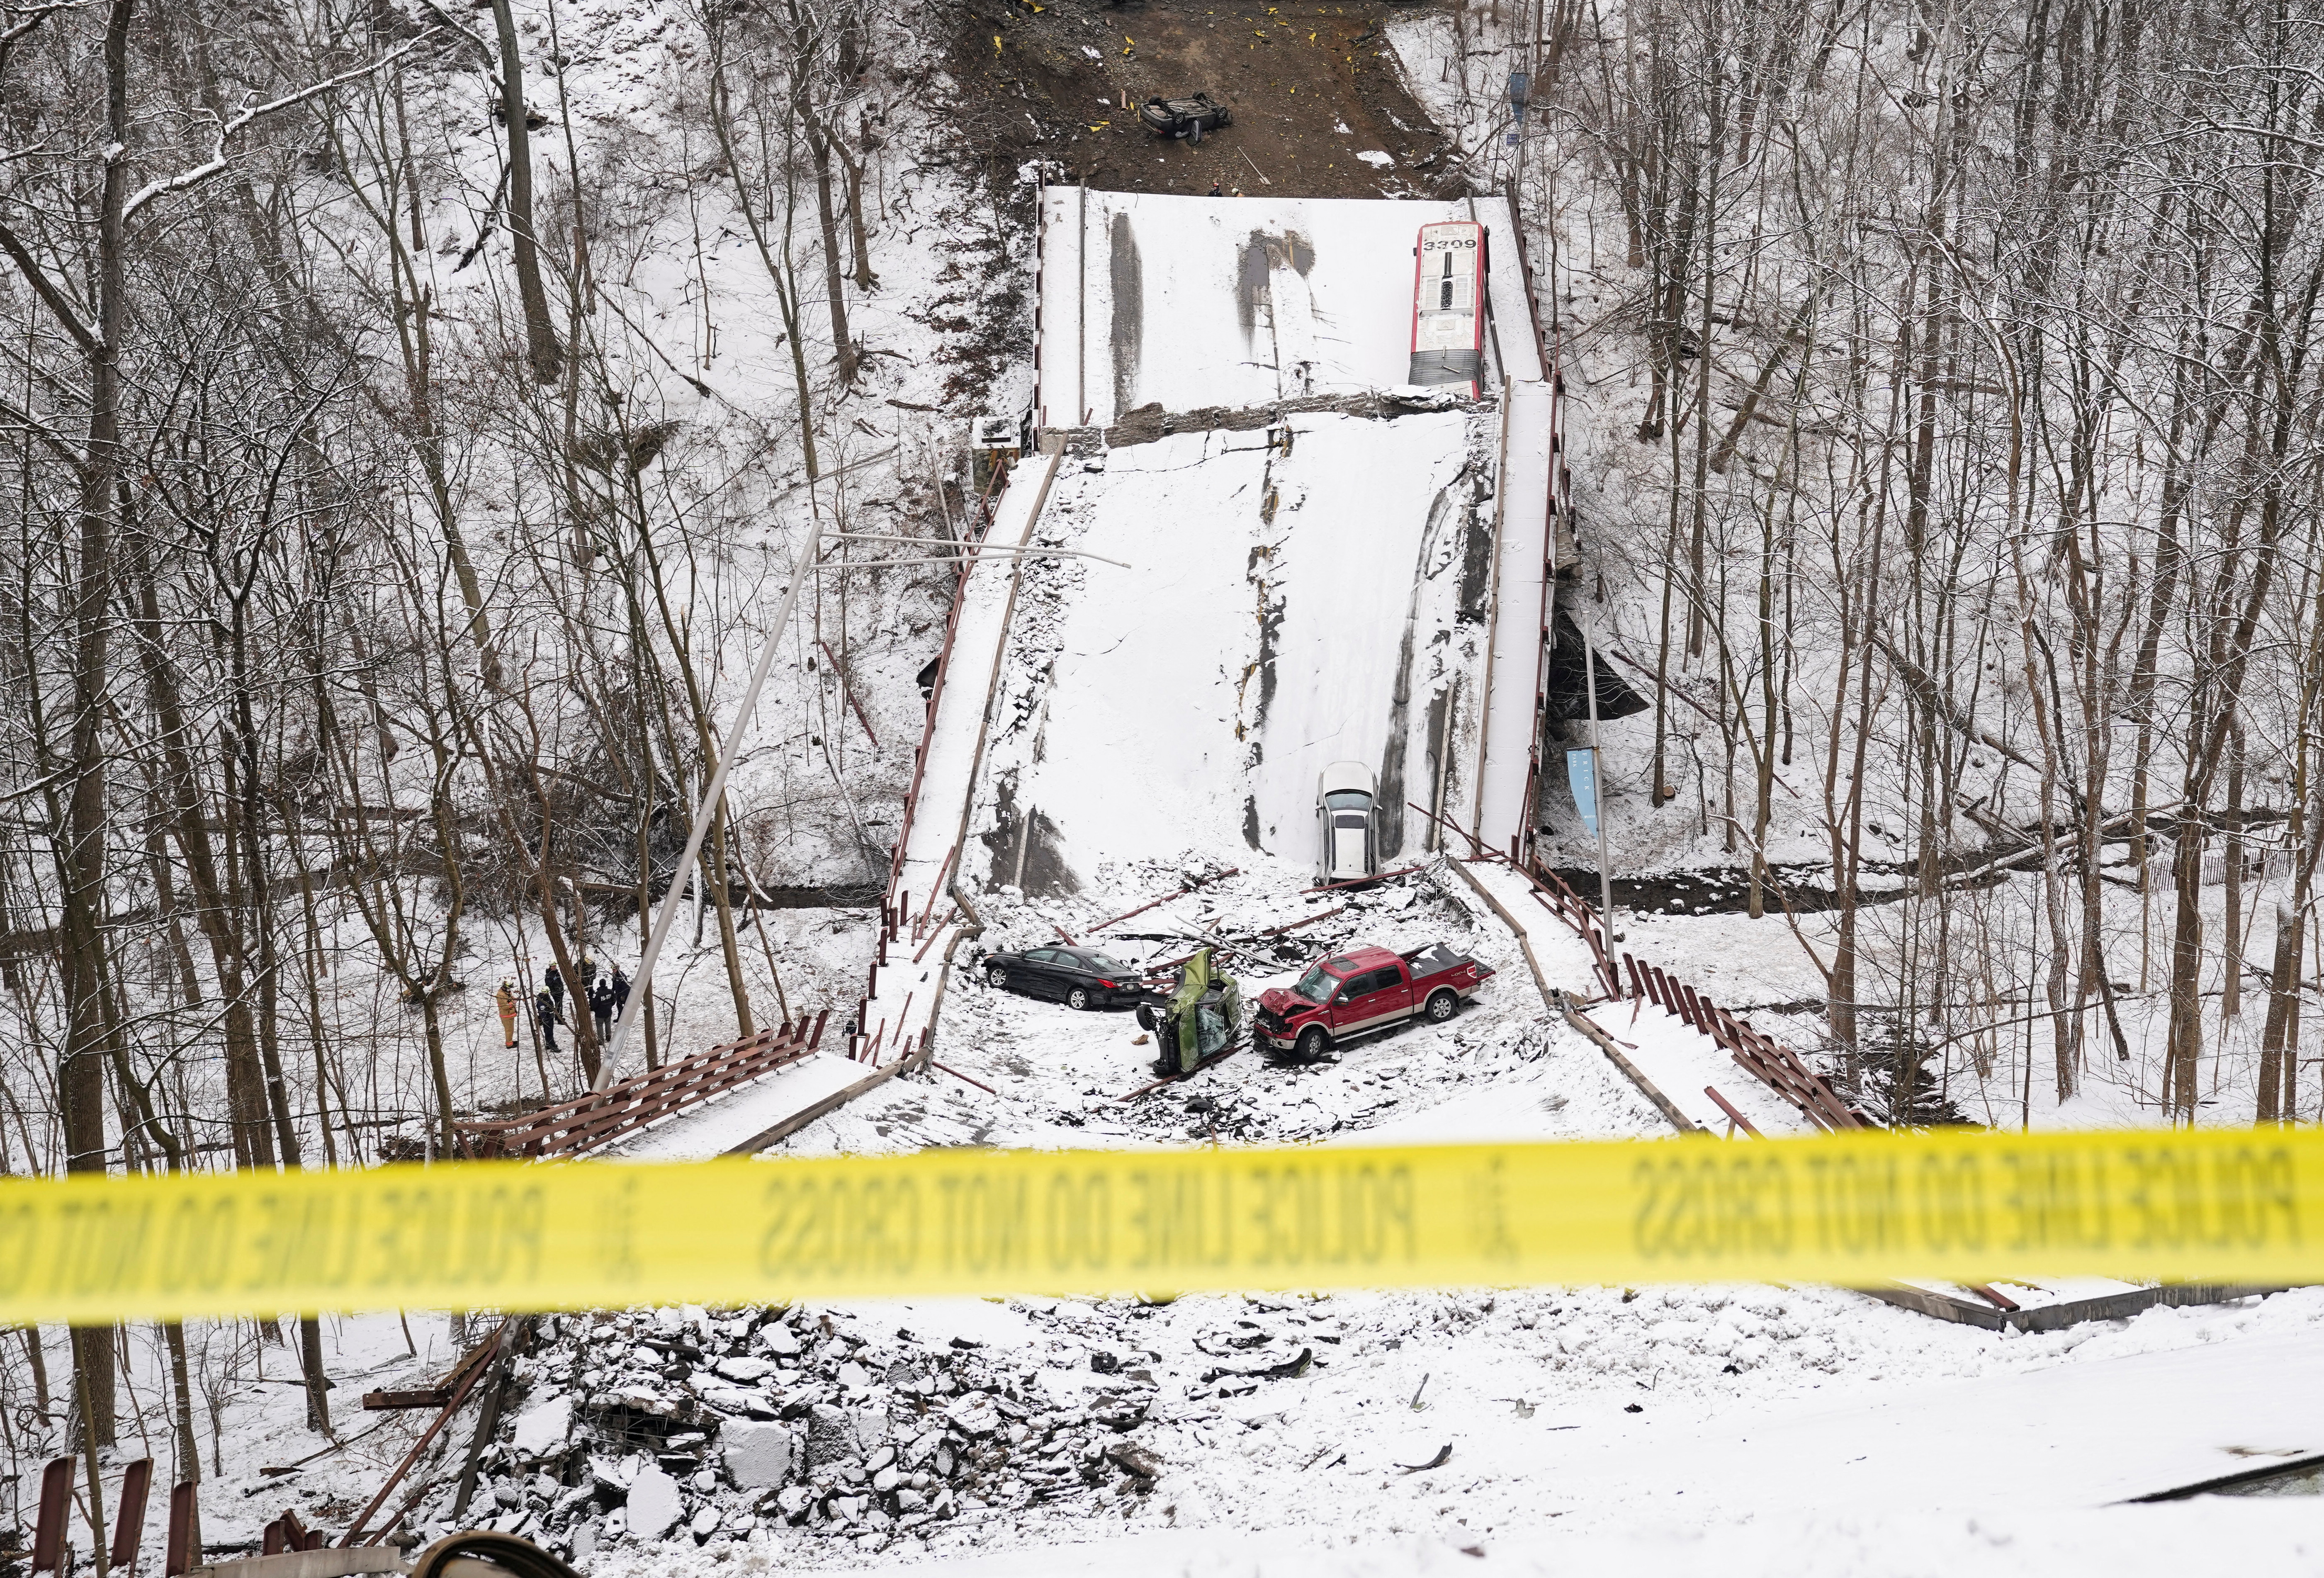 28 Ocak 2022, Pittsburgh, Pennsylvania, ABD'de çöken bir köprünün kalıntıları üzerinde araçlar görülüyor. REUTERS/Kevin Lamarque